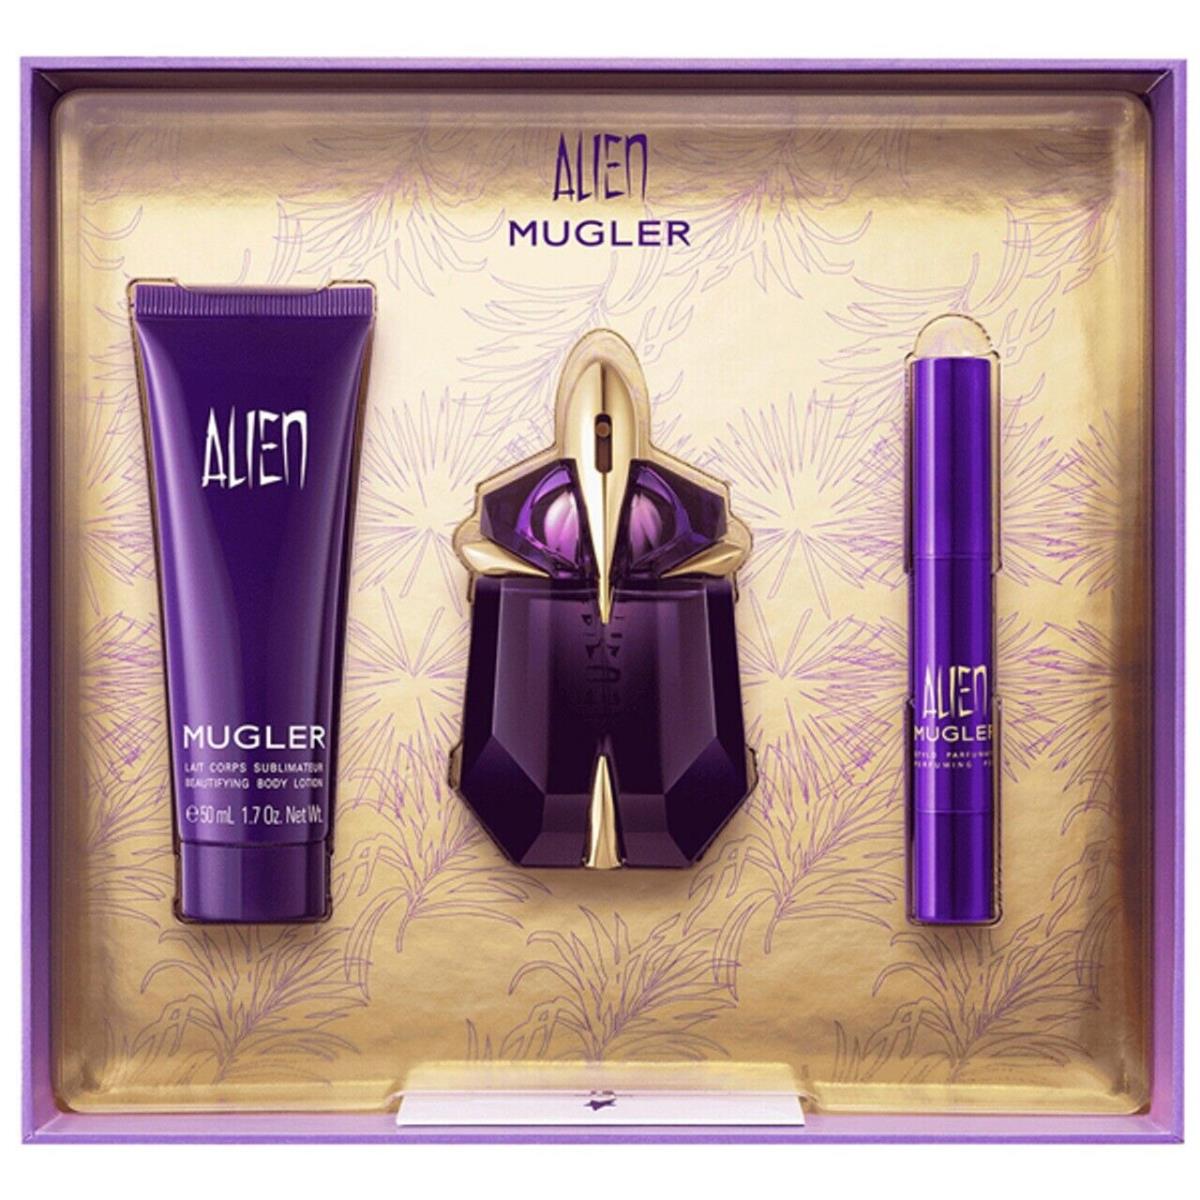 Mugler Alien 3PC Women Gift Set - 2.0OZ Edp + 1.7OZ Body Lotion + 0.33O Edp